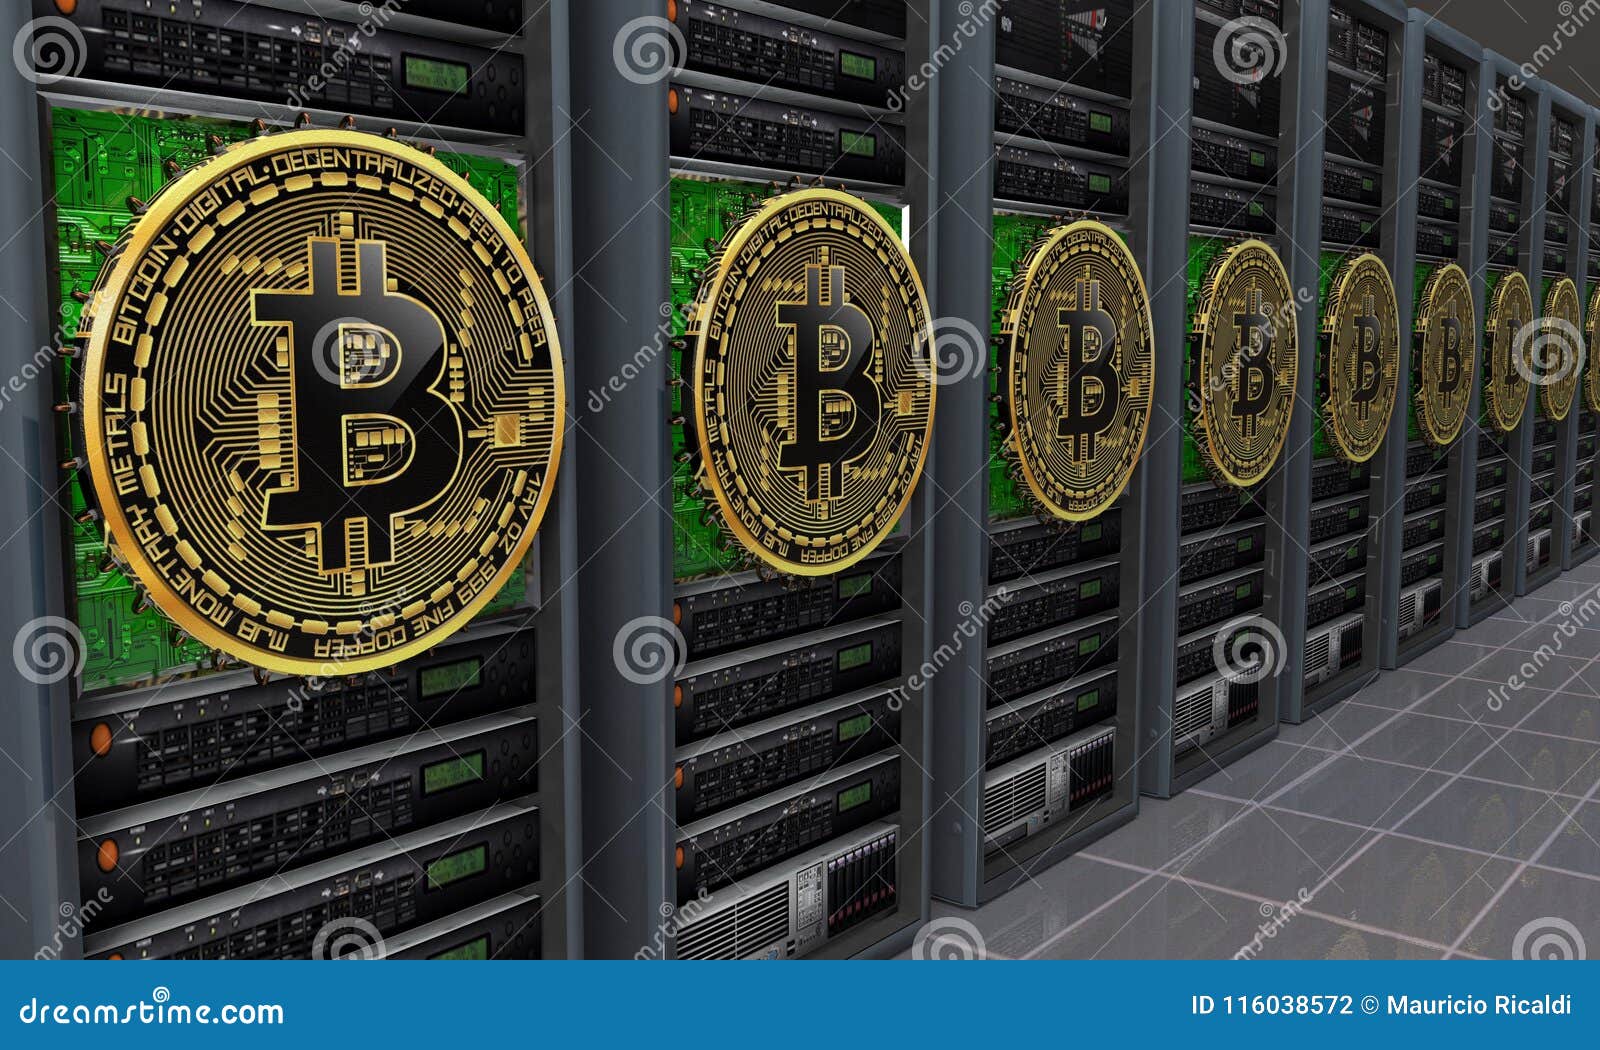 bitcoin trading sicuro o no